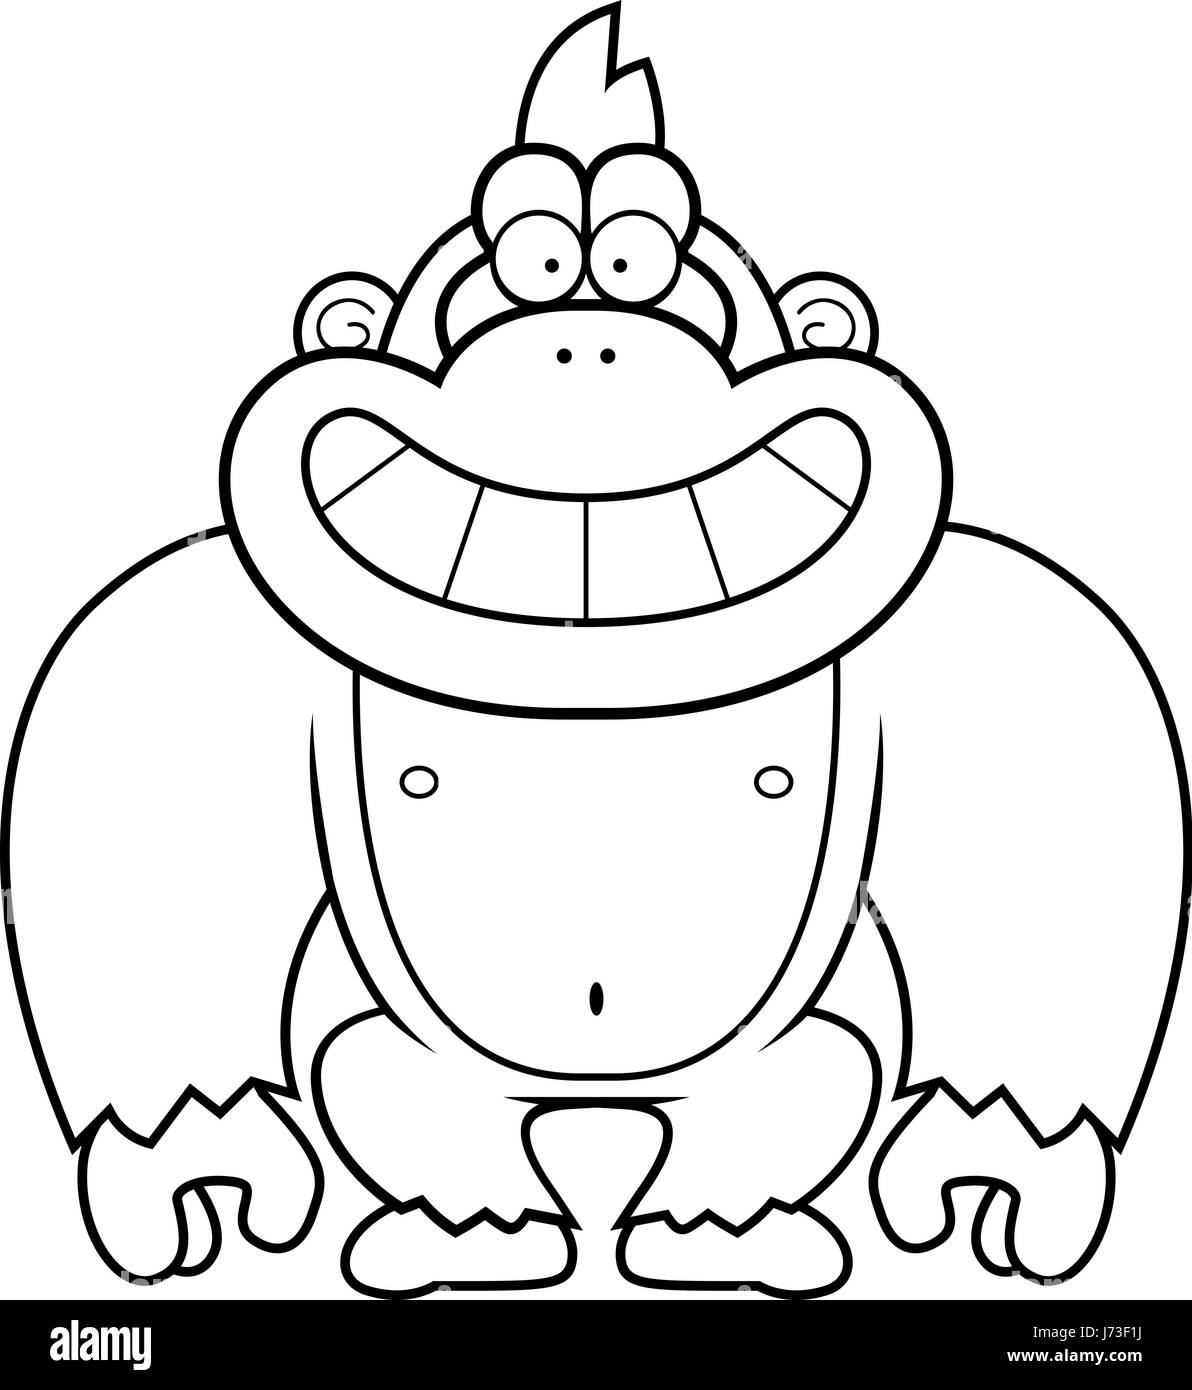 Eine Karikatur Illustration eines Gorillas grinsend. Stock Vektor